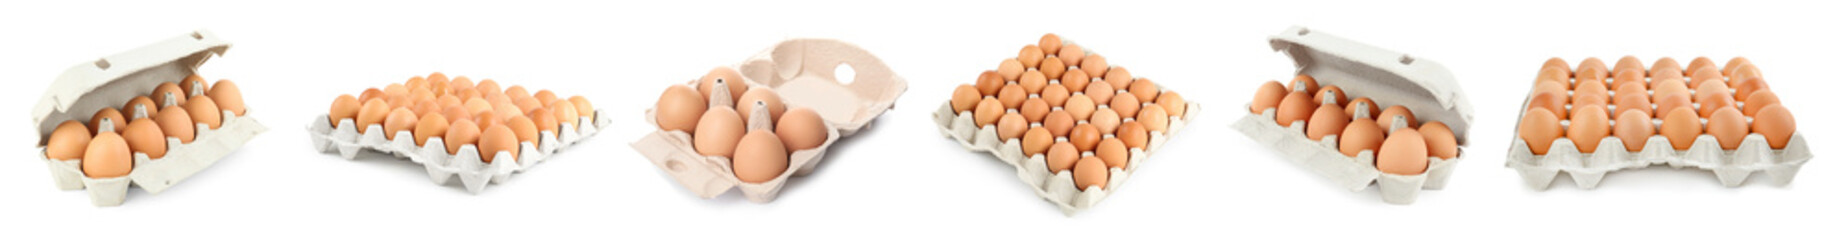 Set of raw chicken eggs on white background. Banner design